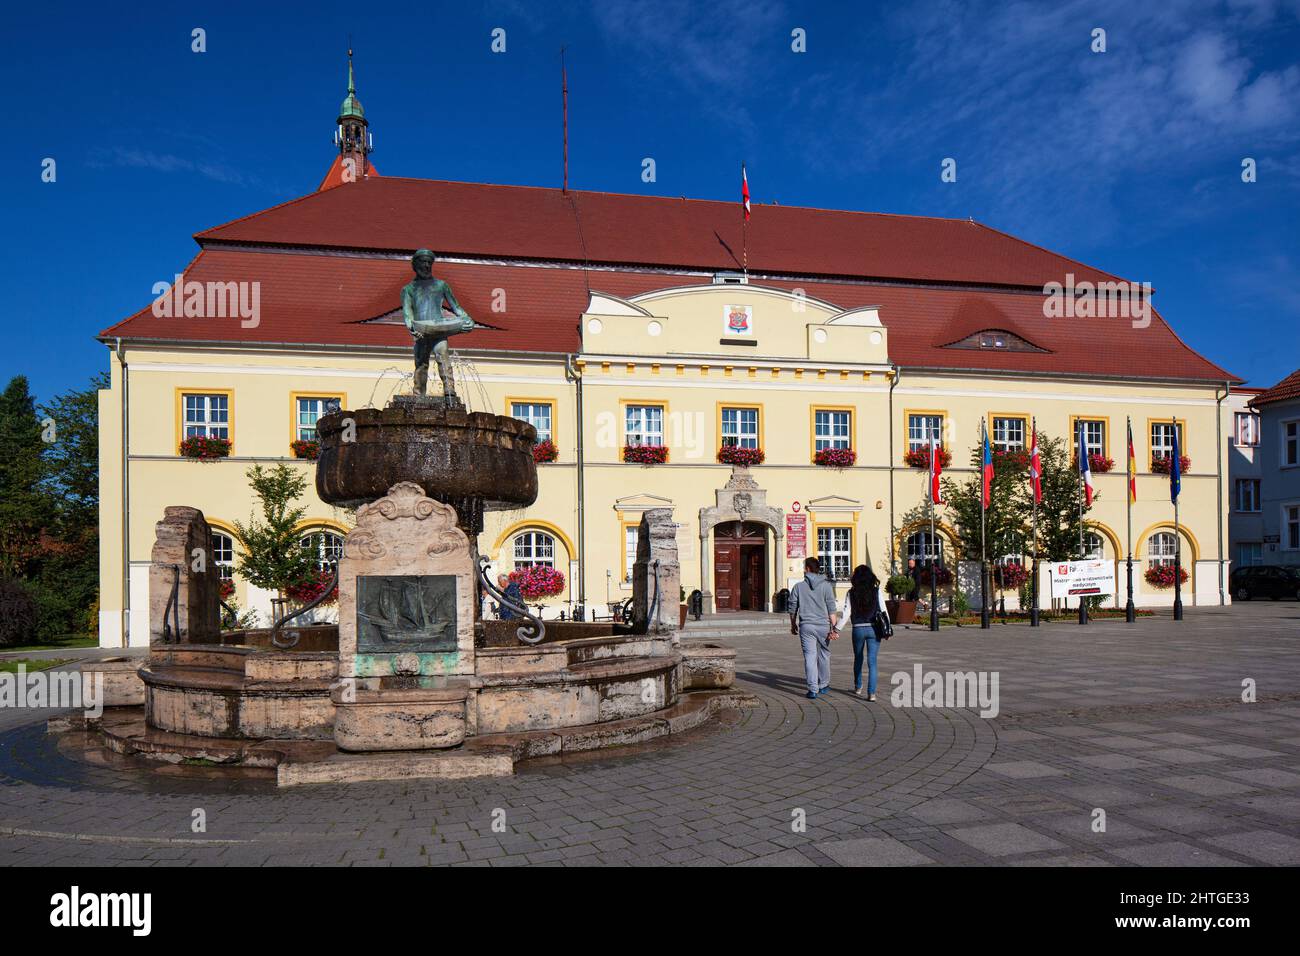 Poland, West Pomeranian Voivodeship, Darłowo - Market Square with the Town Hall Stock Photo